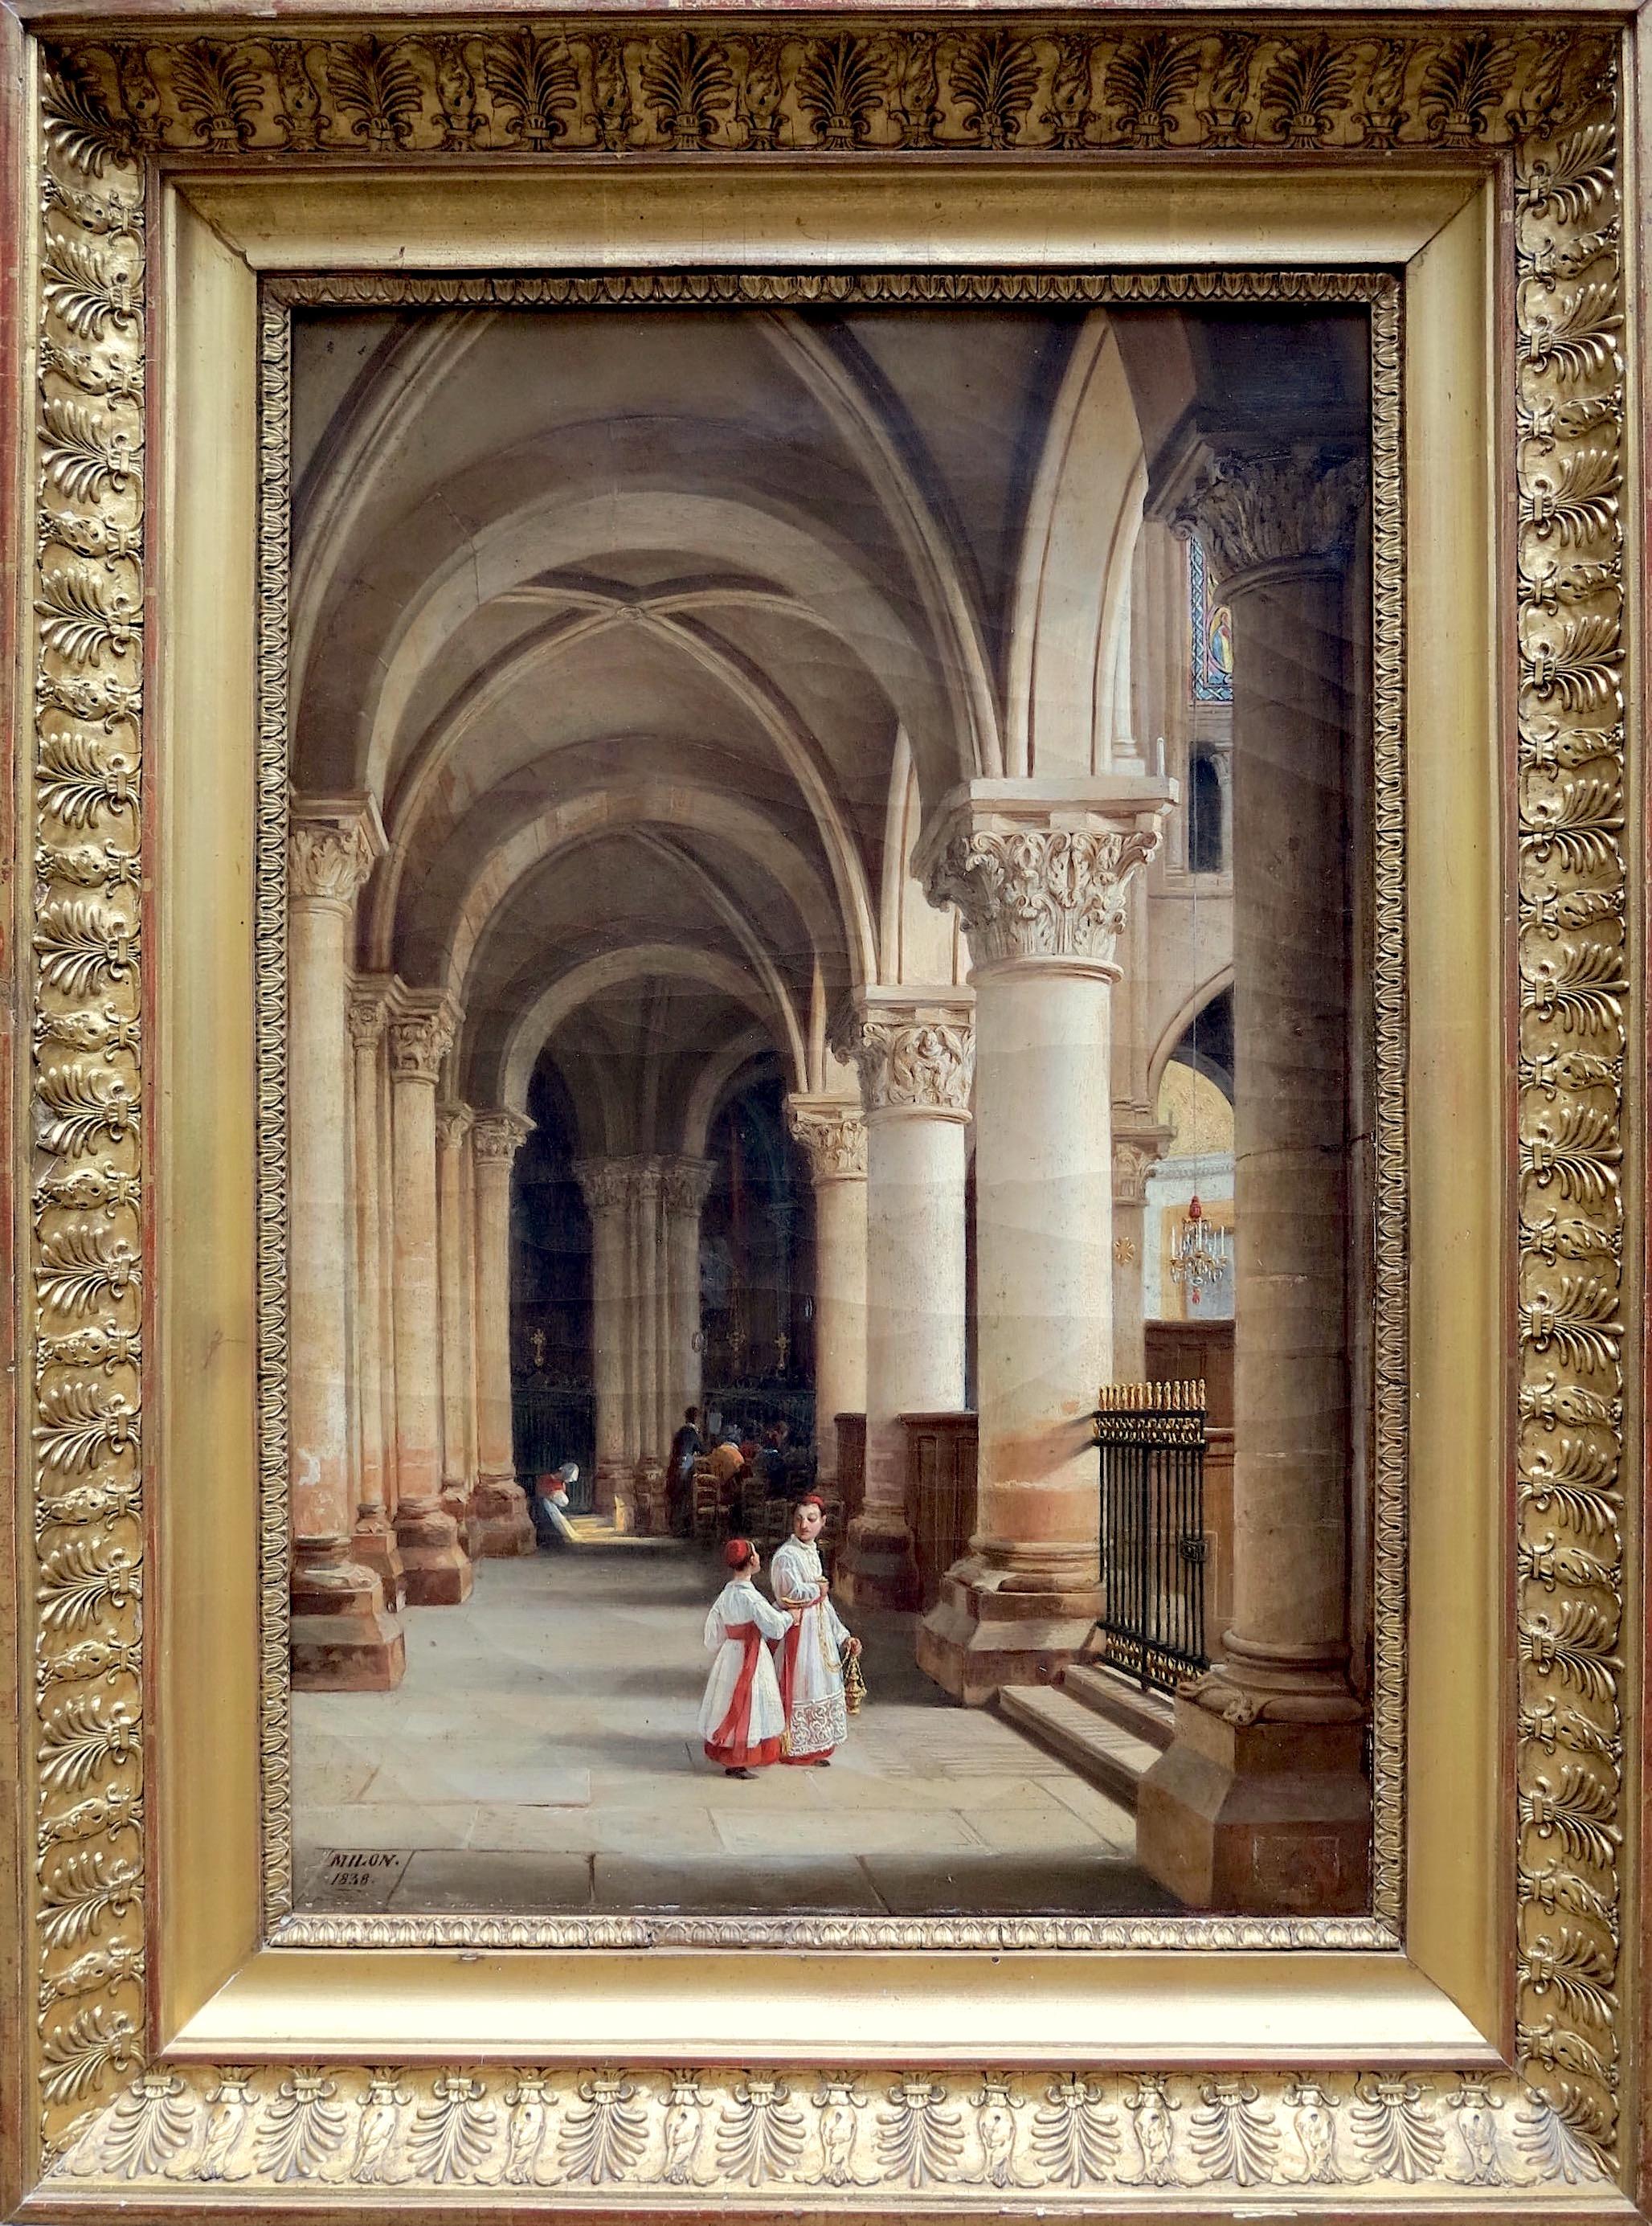 Alexis Milon Figurative Painting - View of one of the aisles of the apse of Saint-Germain-des-Prés, Paris, France